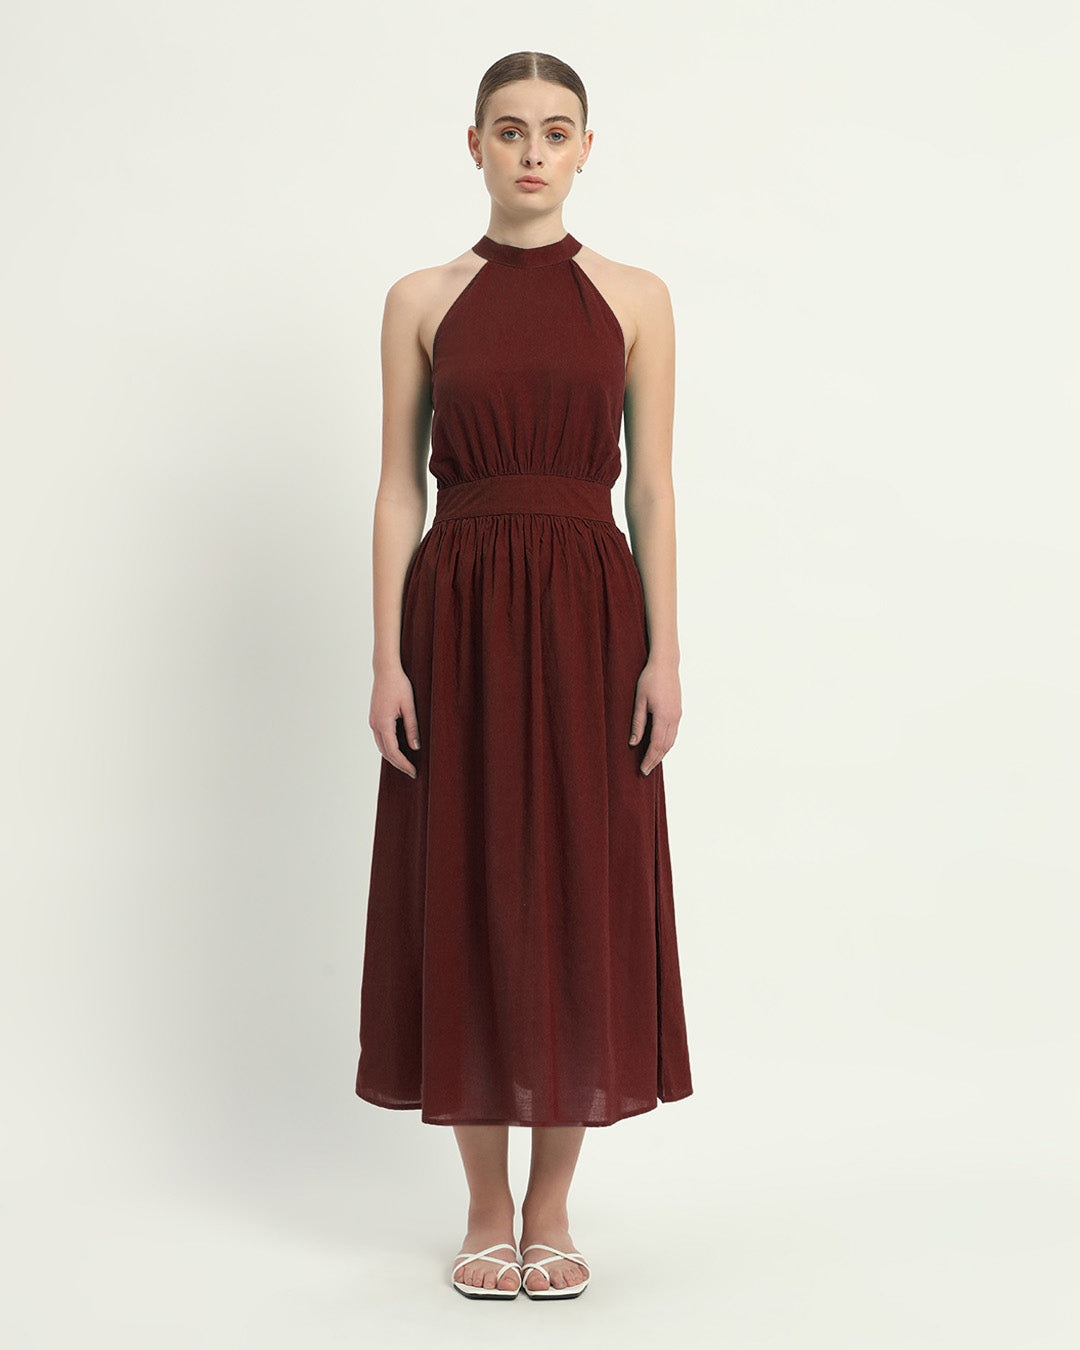 The Rouge Massena Cotton Dress